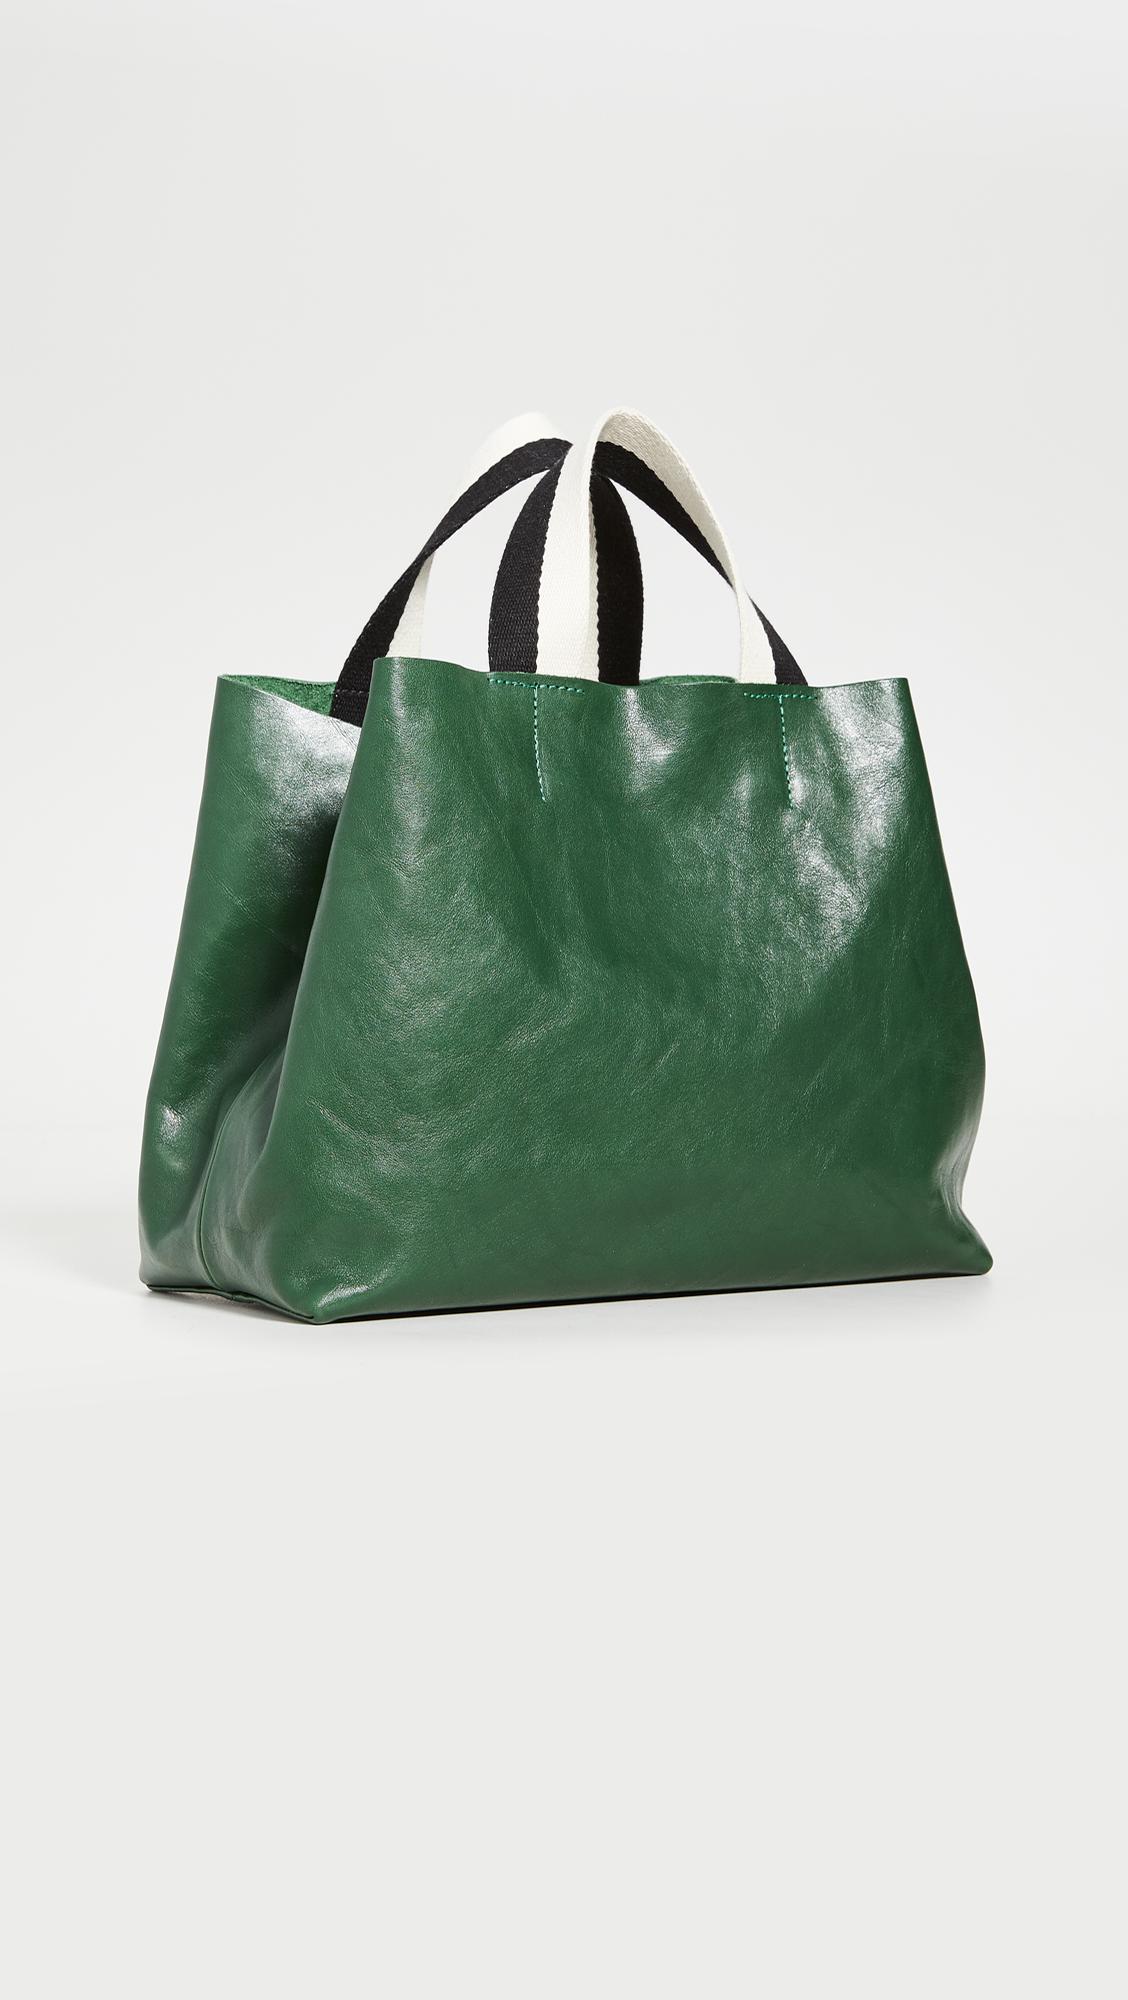 Clare V. Bateau Woven Leather Tote Bag